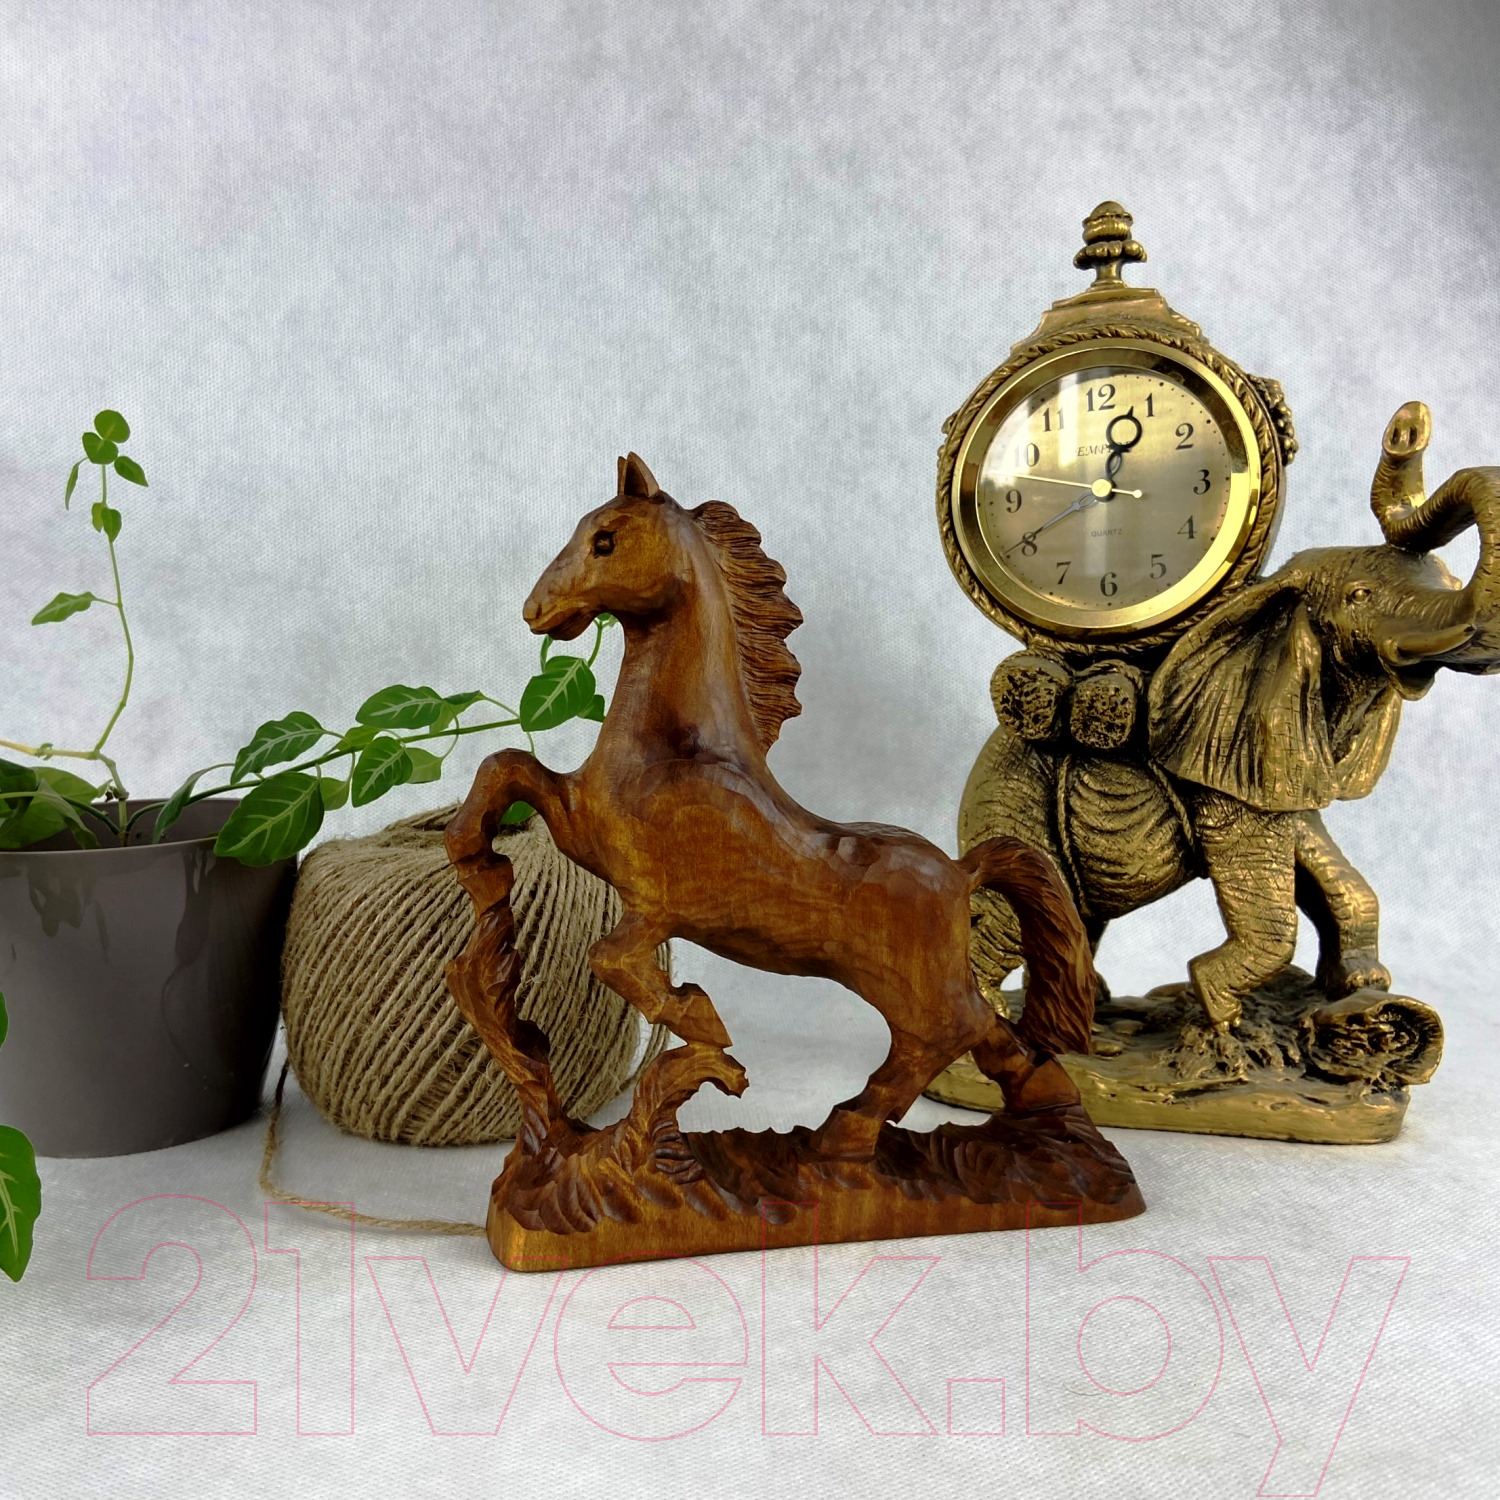 Статуэтка Брестская Фабрика Сувениров Лошадь / r_horse1